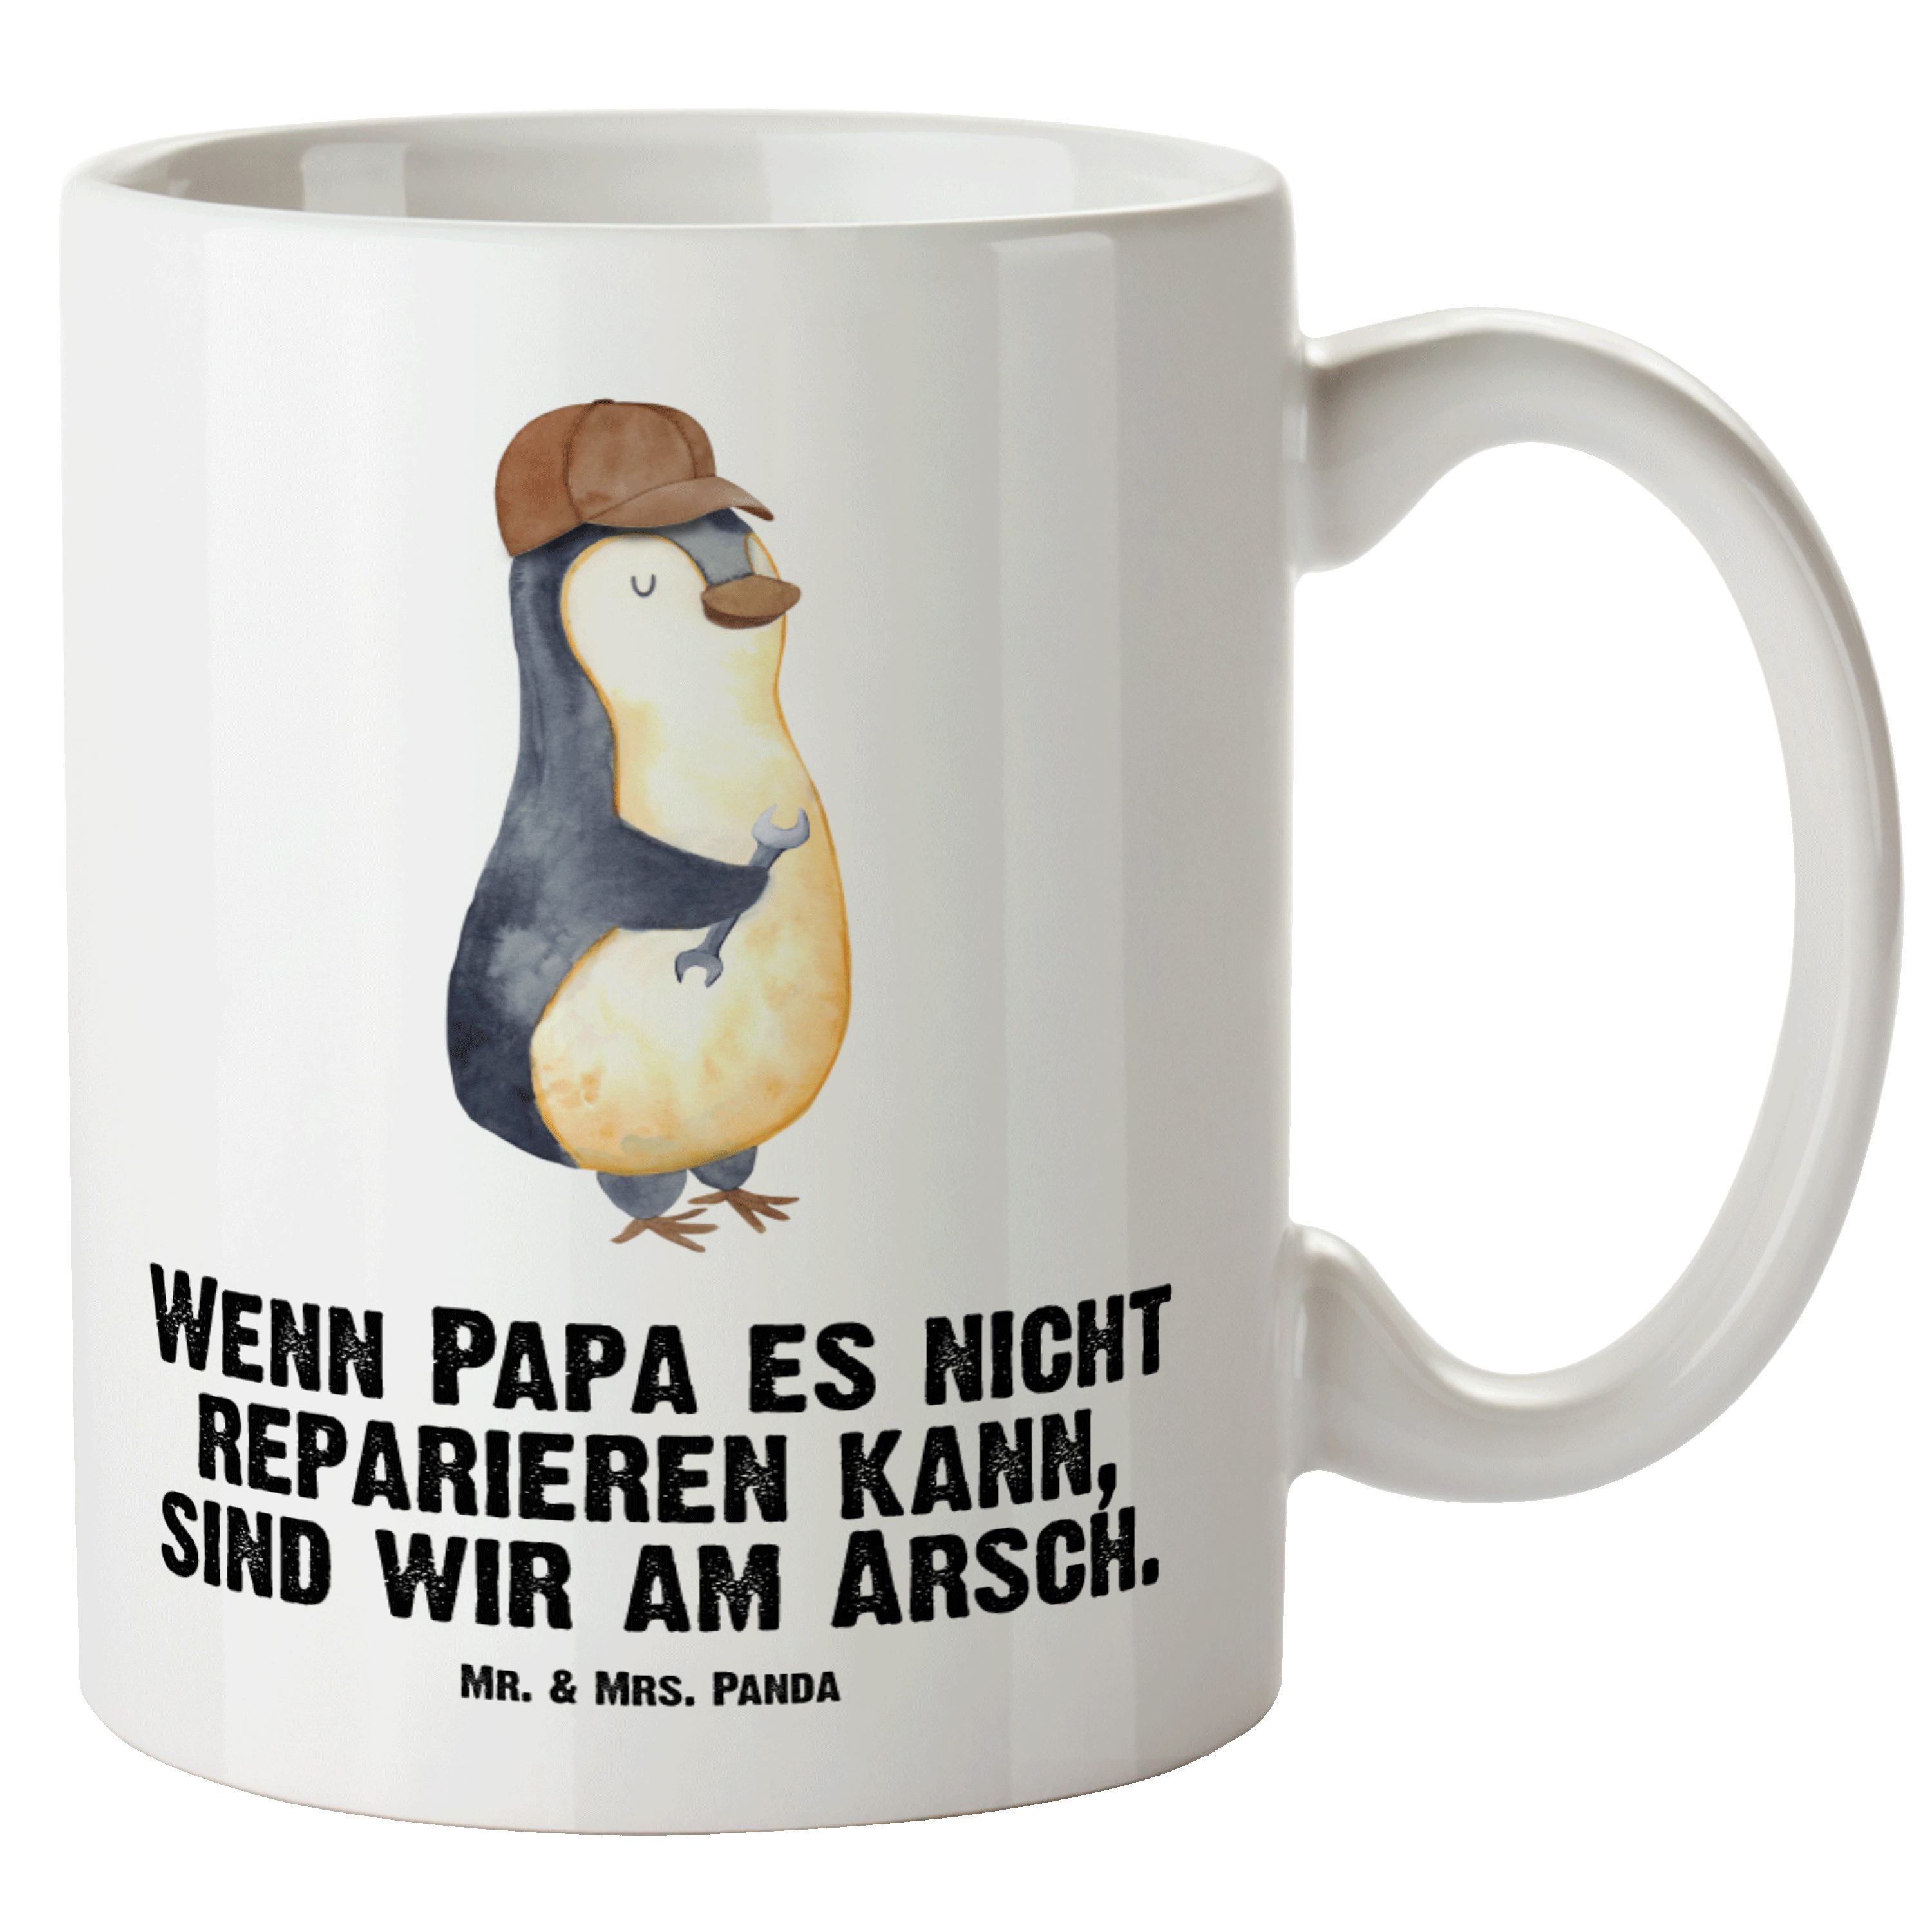 Mr. & Mrs. Panda Tasse Wenn Papa es nicht reparieren kann, sind wir am Arsch - Weiß - Gesche, XL Tasse Keramik | Tassen